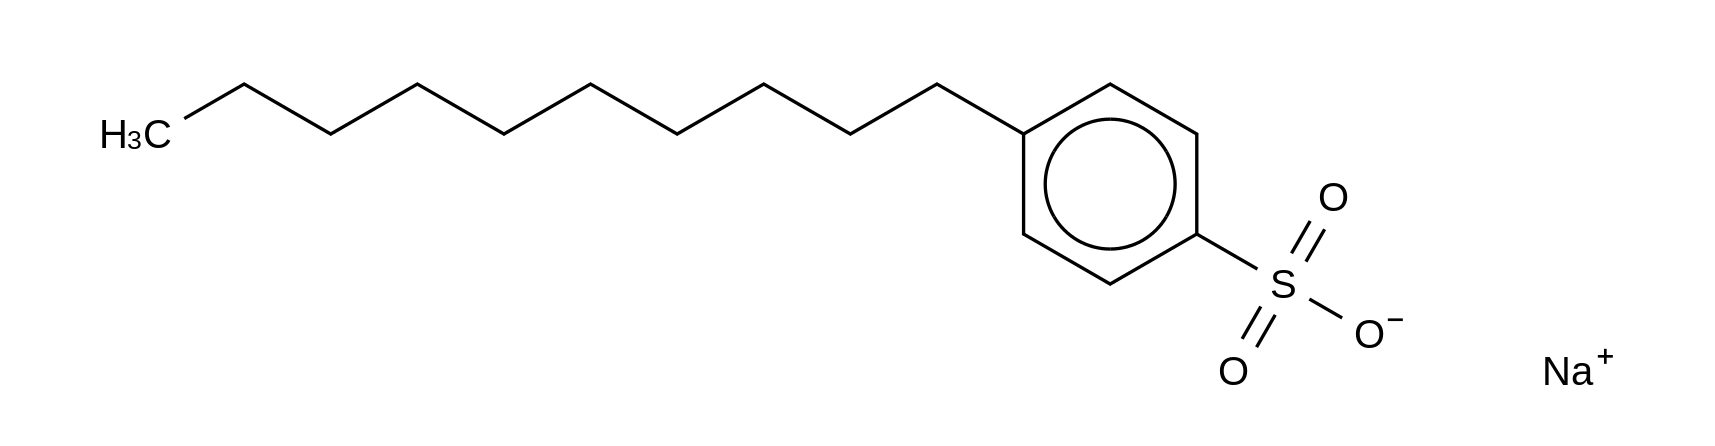 Sodium 4-Decylbenzenesulfonate